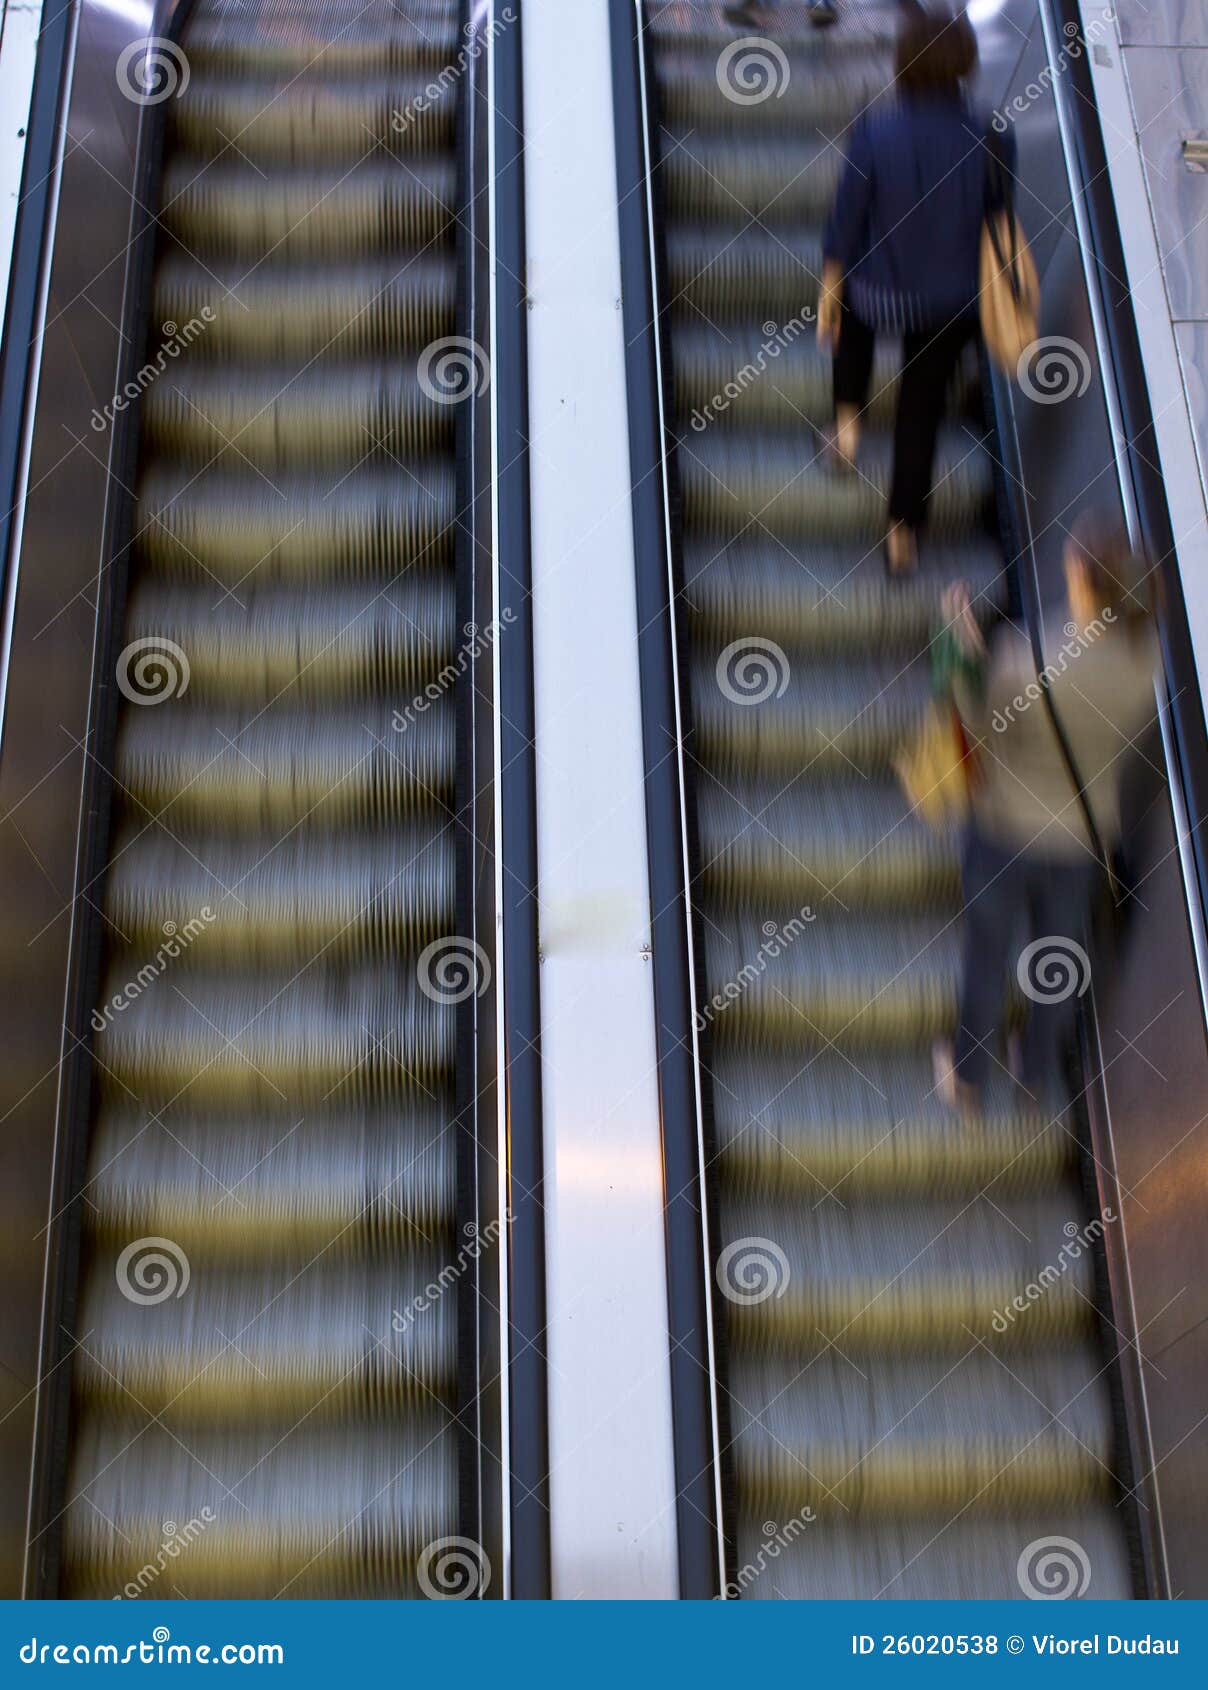 people on escalators